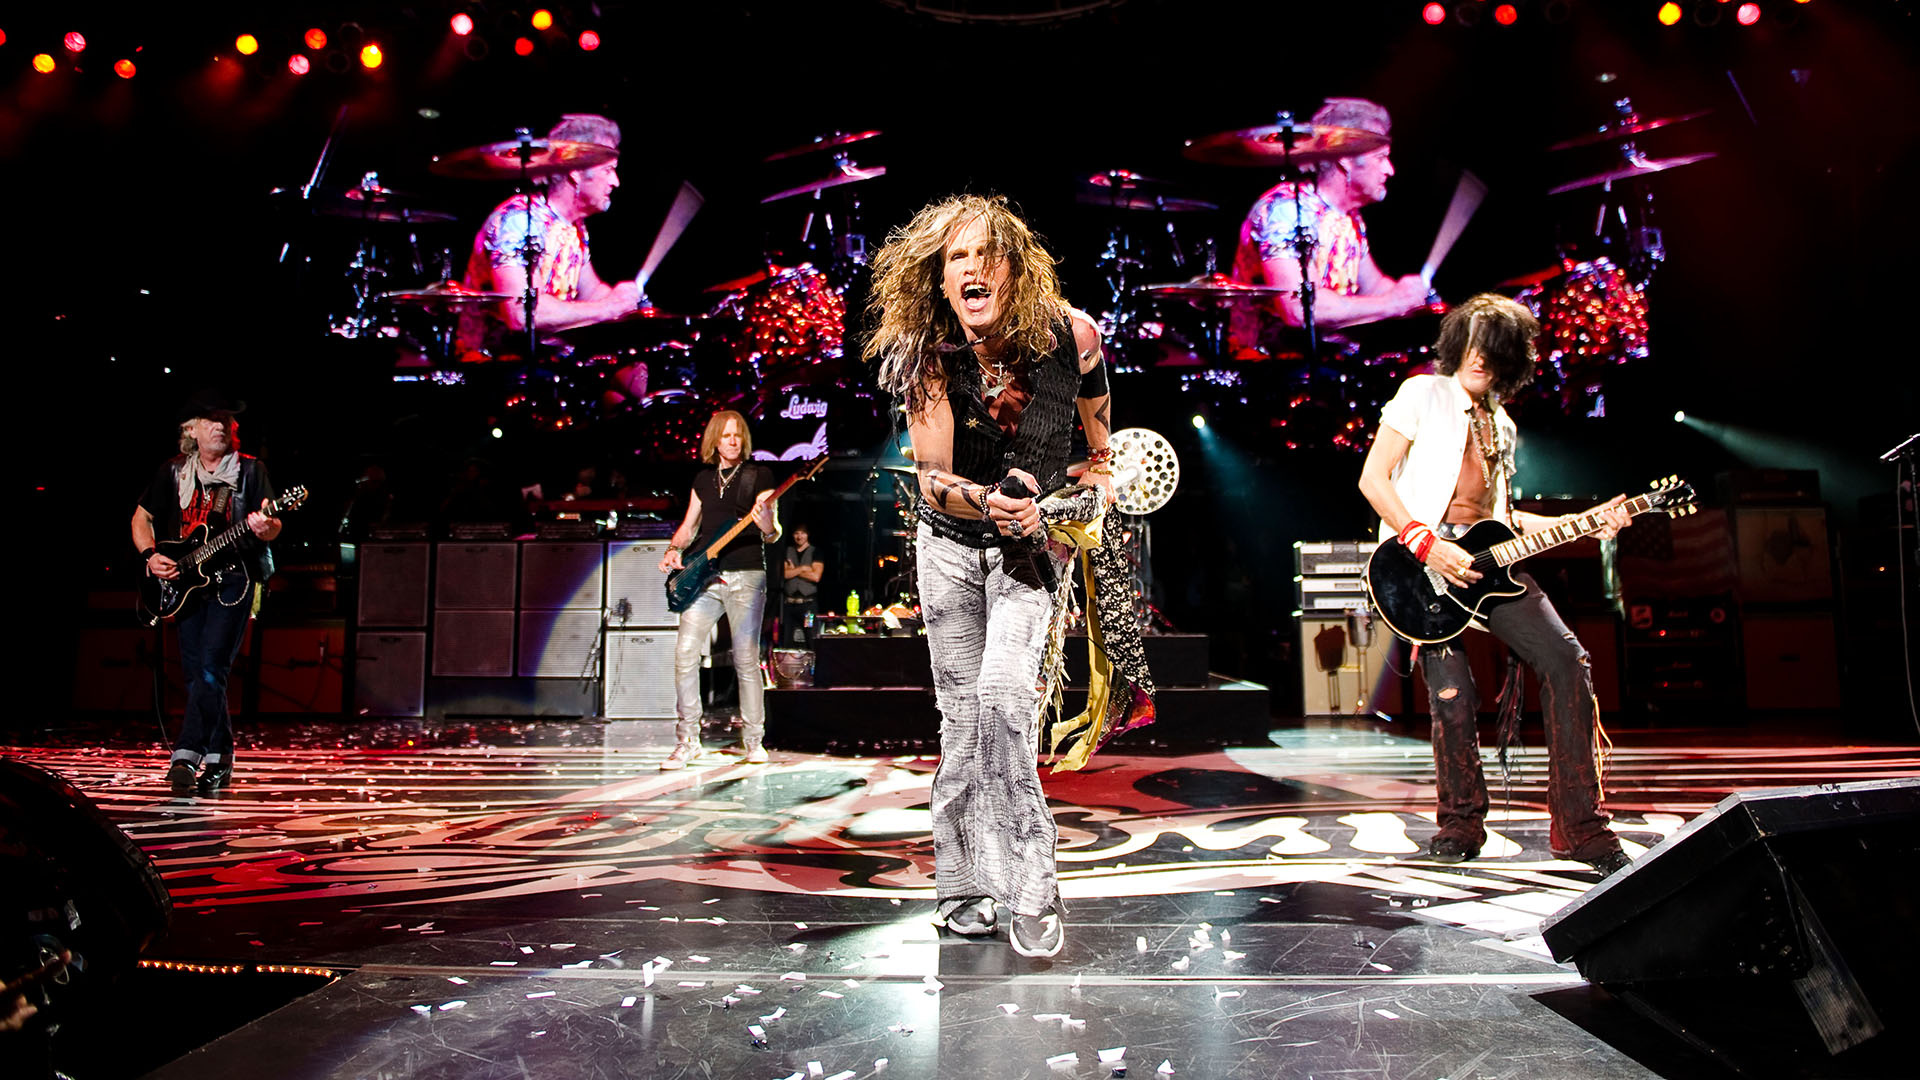 Concert: Aerosmith, An American rock band formed in Boston in 1970, Steven Tyler. 1920x1080 Full HD Wallpaper.